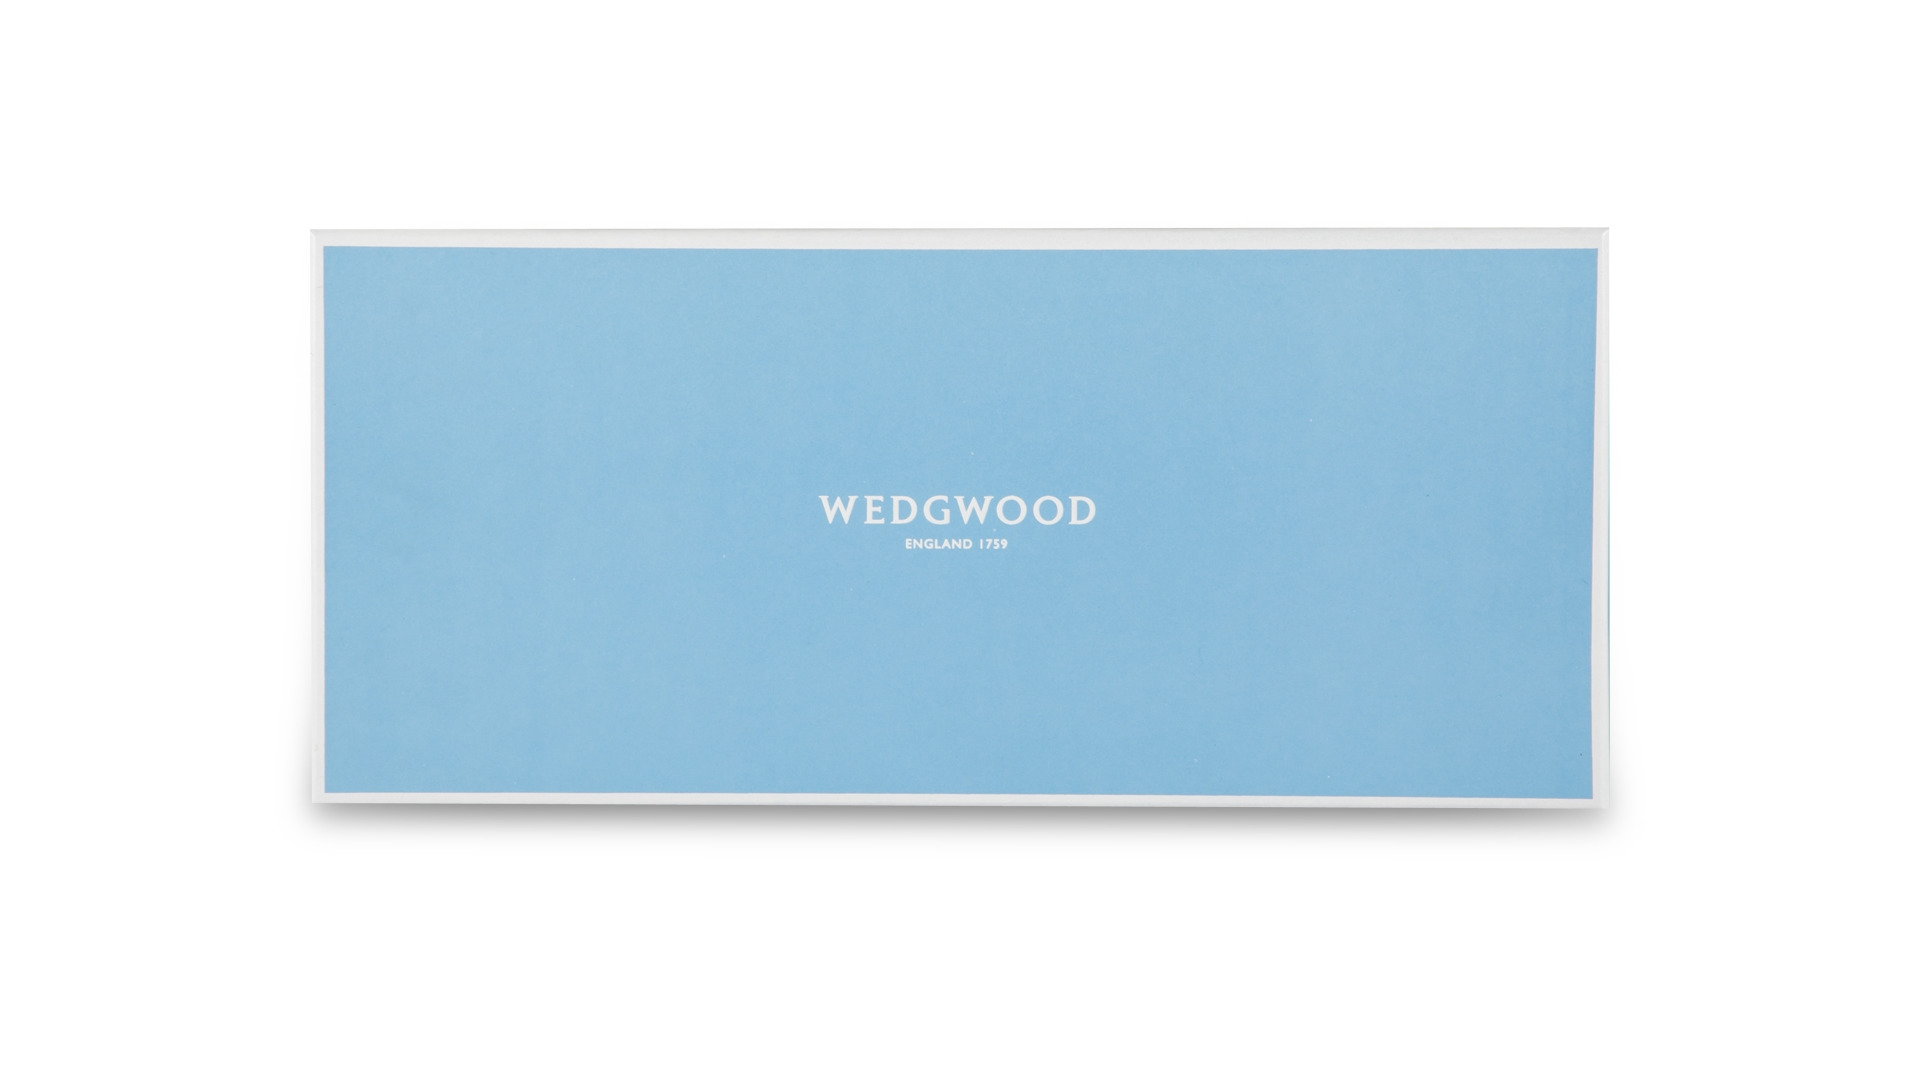 Блюдо прямоугольное Wedgwood Вандерласт Водяная лилия 34х15,5 см, фарфор